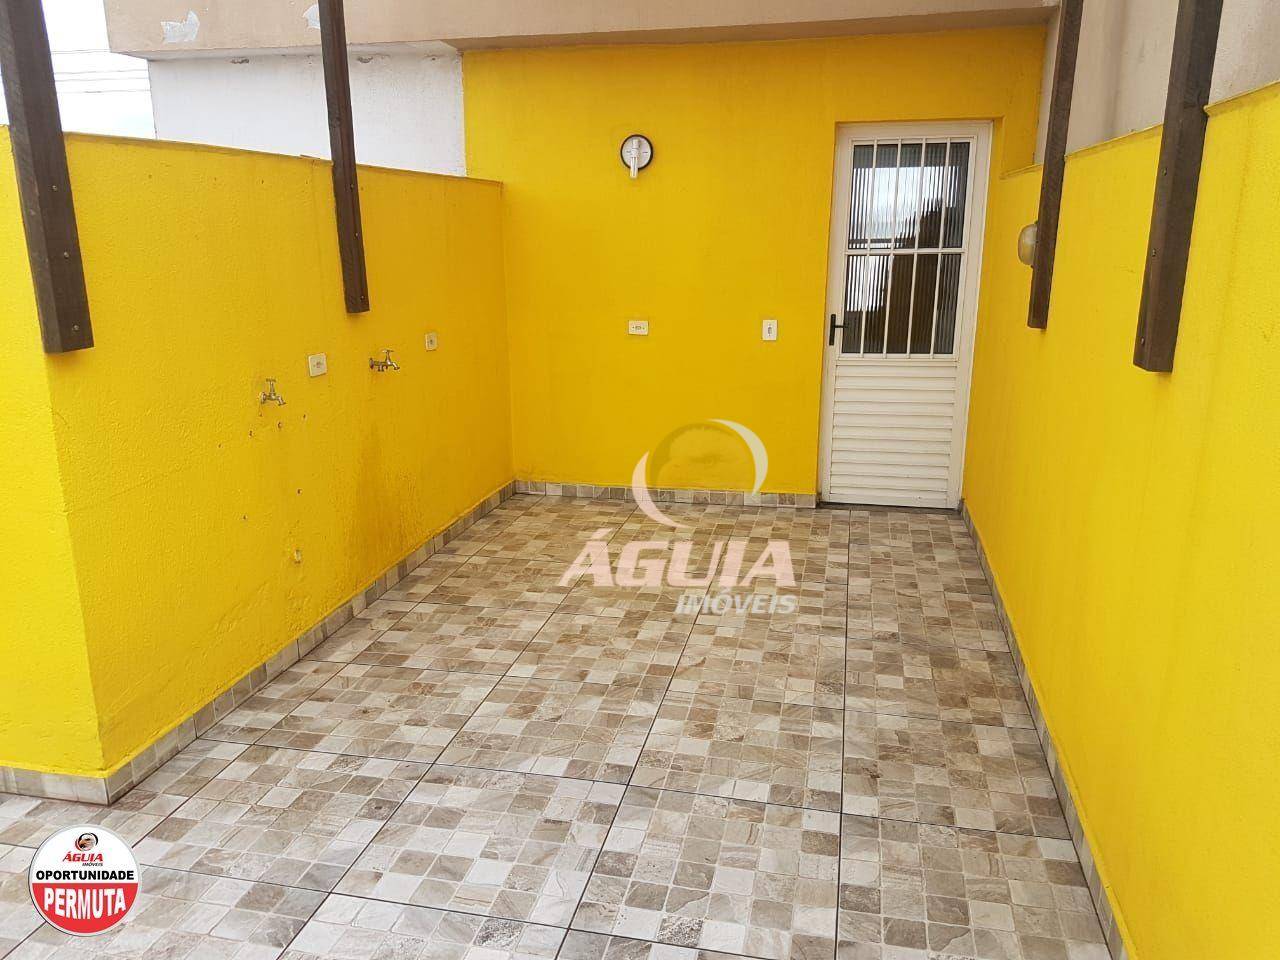 Cobertura com 2 dormitórios à venda, 38 m² por R$ 285.000,00 - Parque Capuava - Santo André/SP